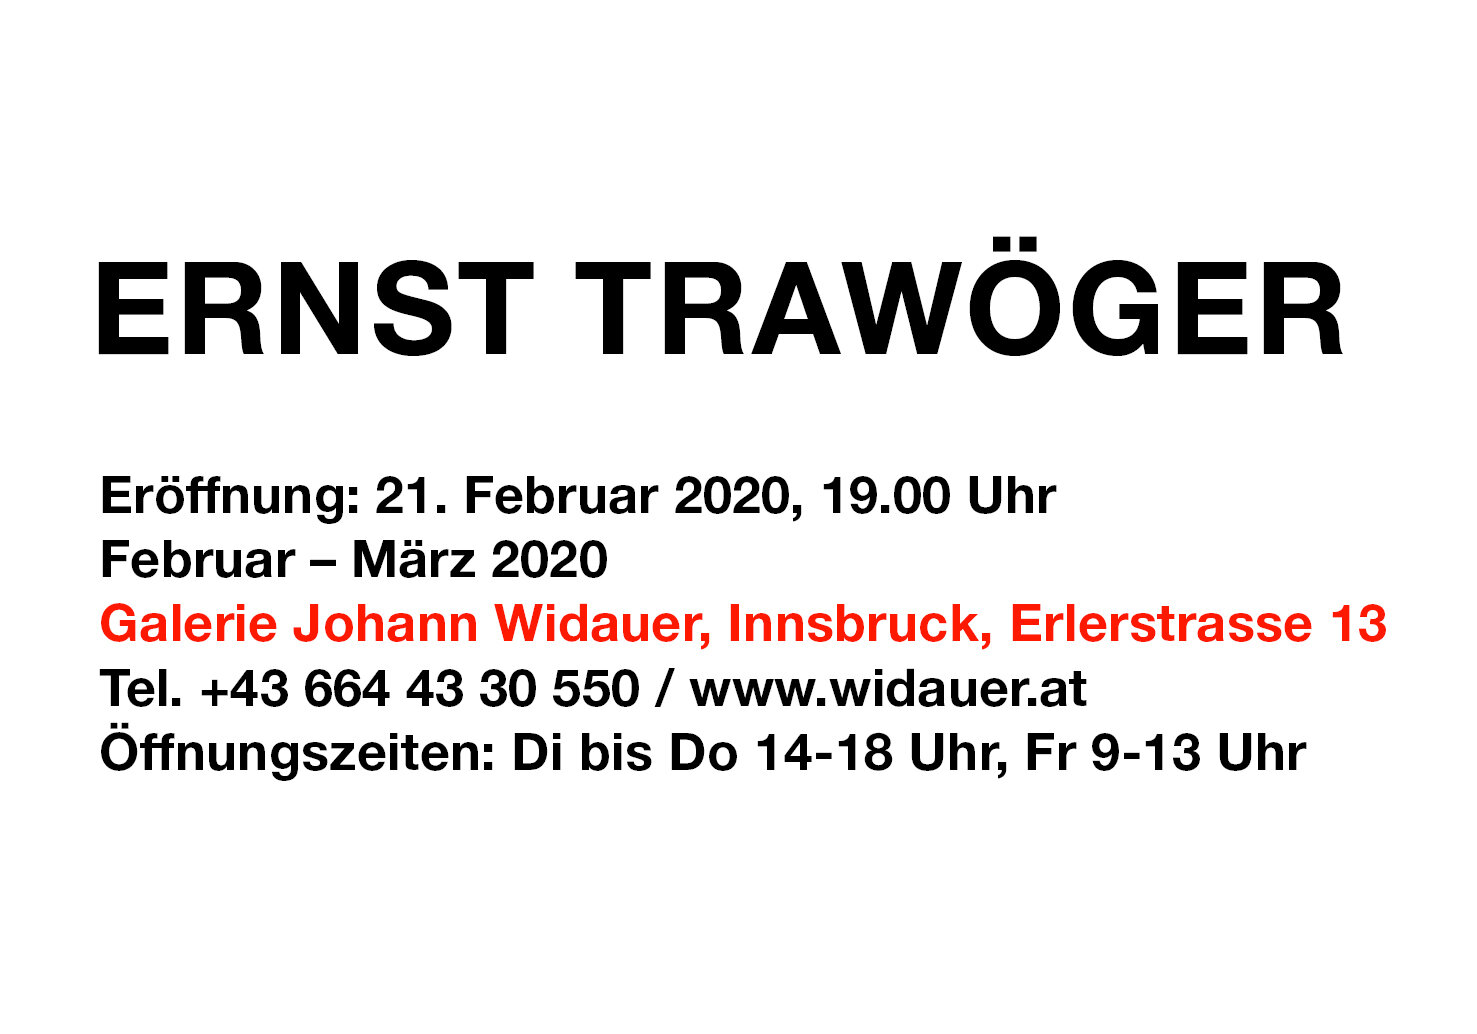 2020Ex01 Ernst Trawoeger - Invitation (Homepage).jpg